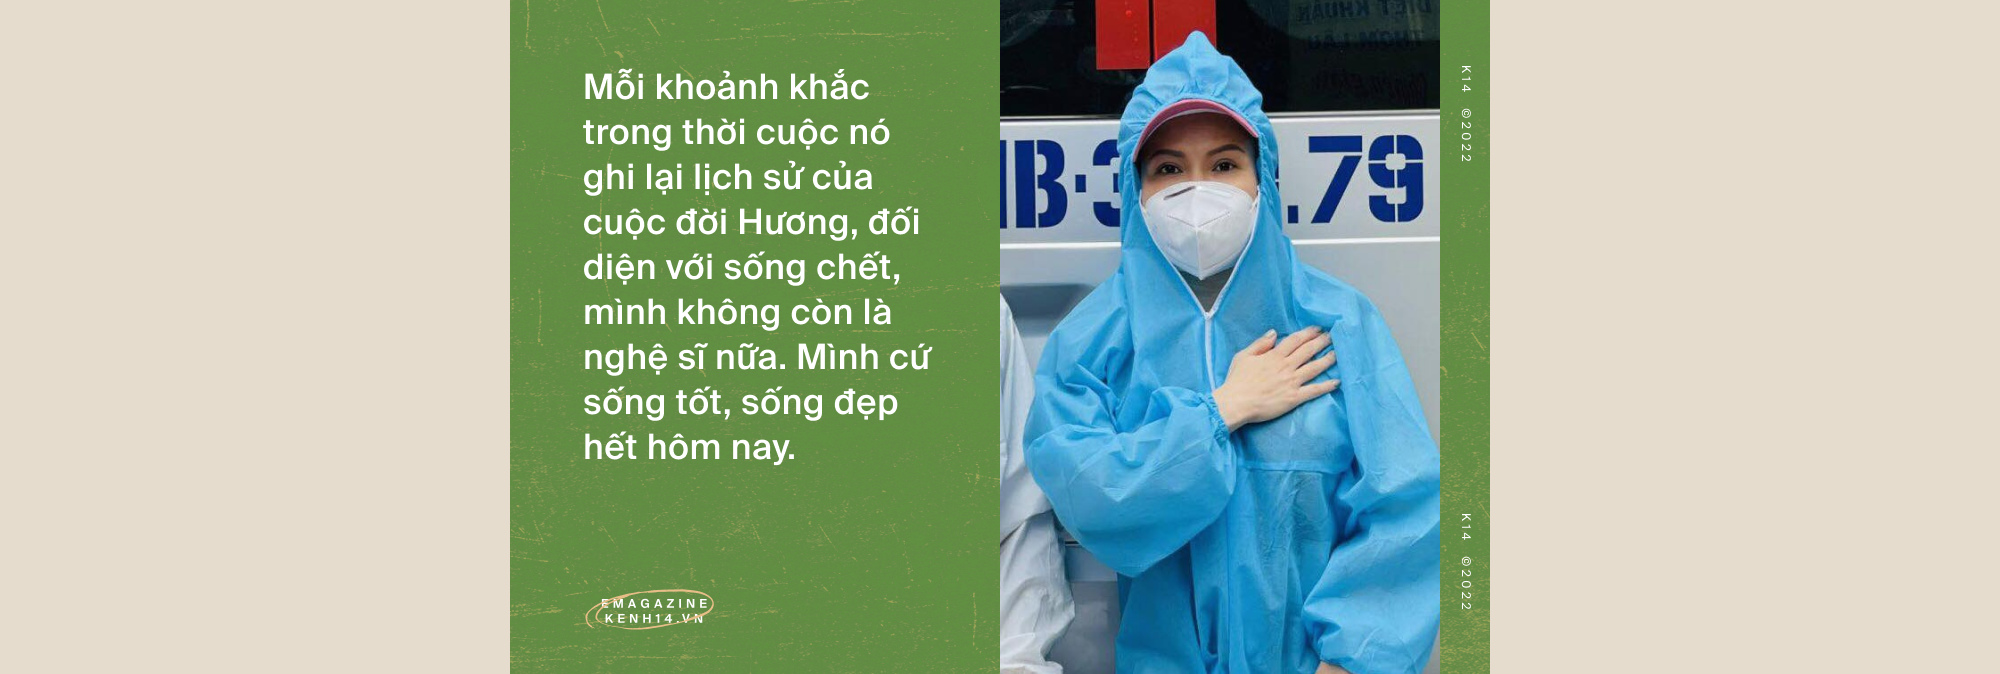 Việt Hương: Đã có nhiều người gọi điện nắm tay tôi nói sẽ cố sống, nhưng qua hôm sau tôi phải đưa áo quan tới-1